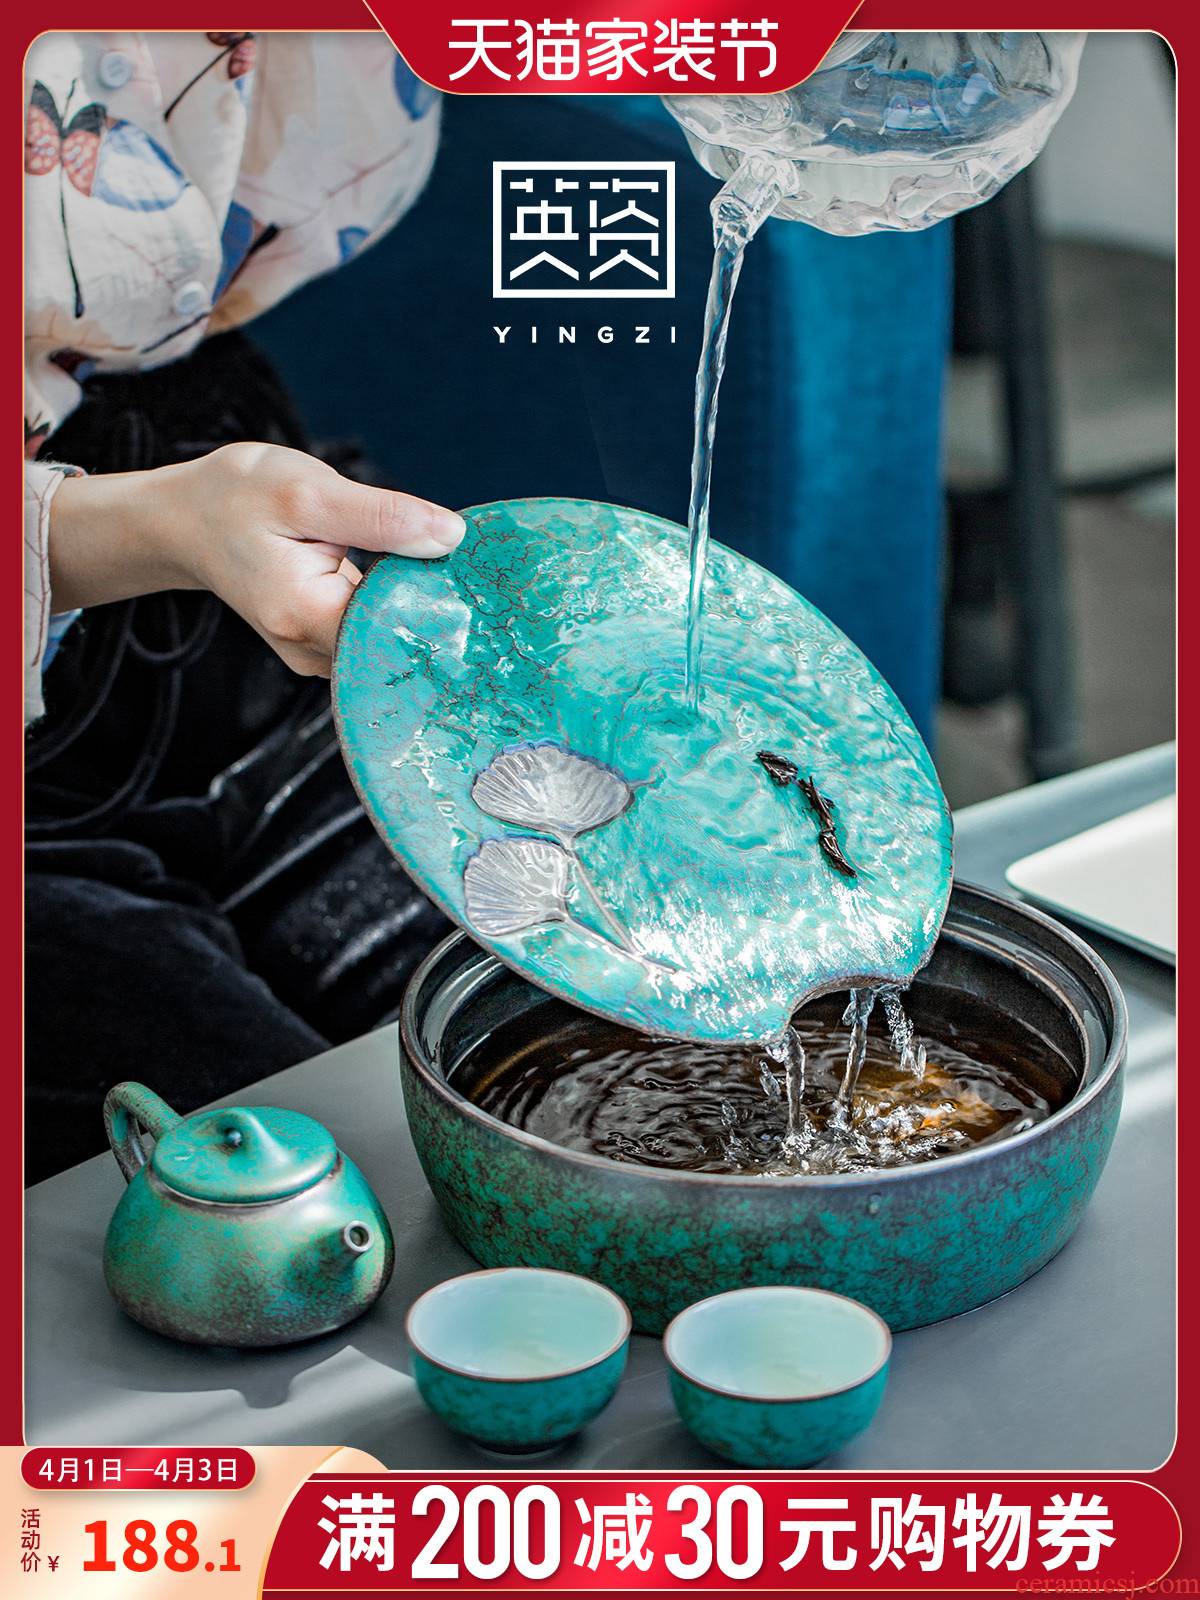 Kung fu tea set teapot ceramic a pot of tea of a complete set of restoring ancient ways two cup of tea tea tea set